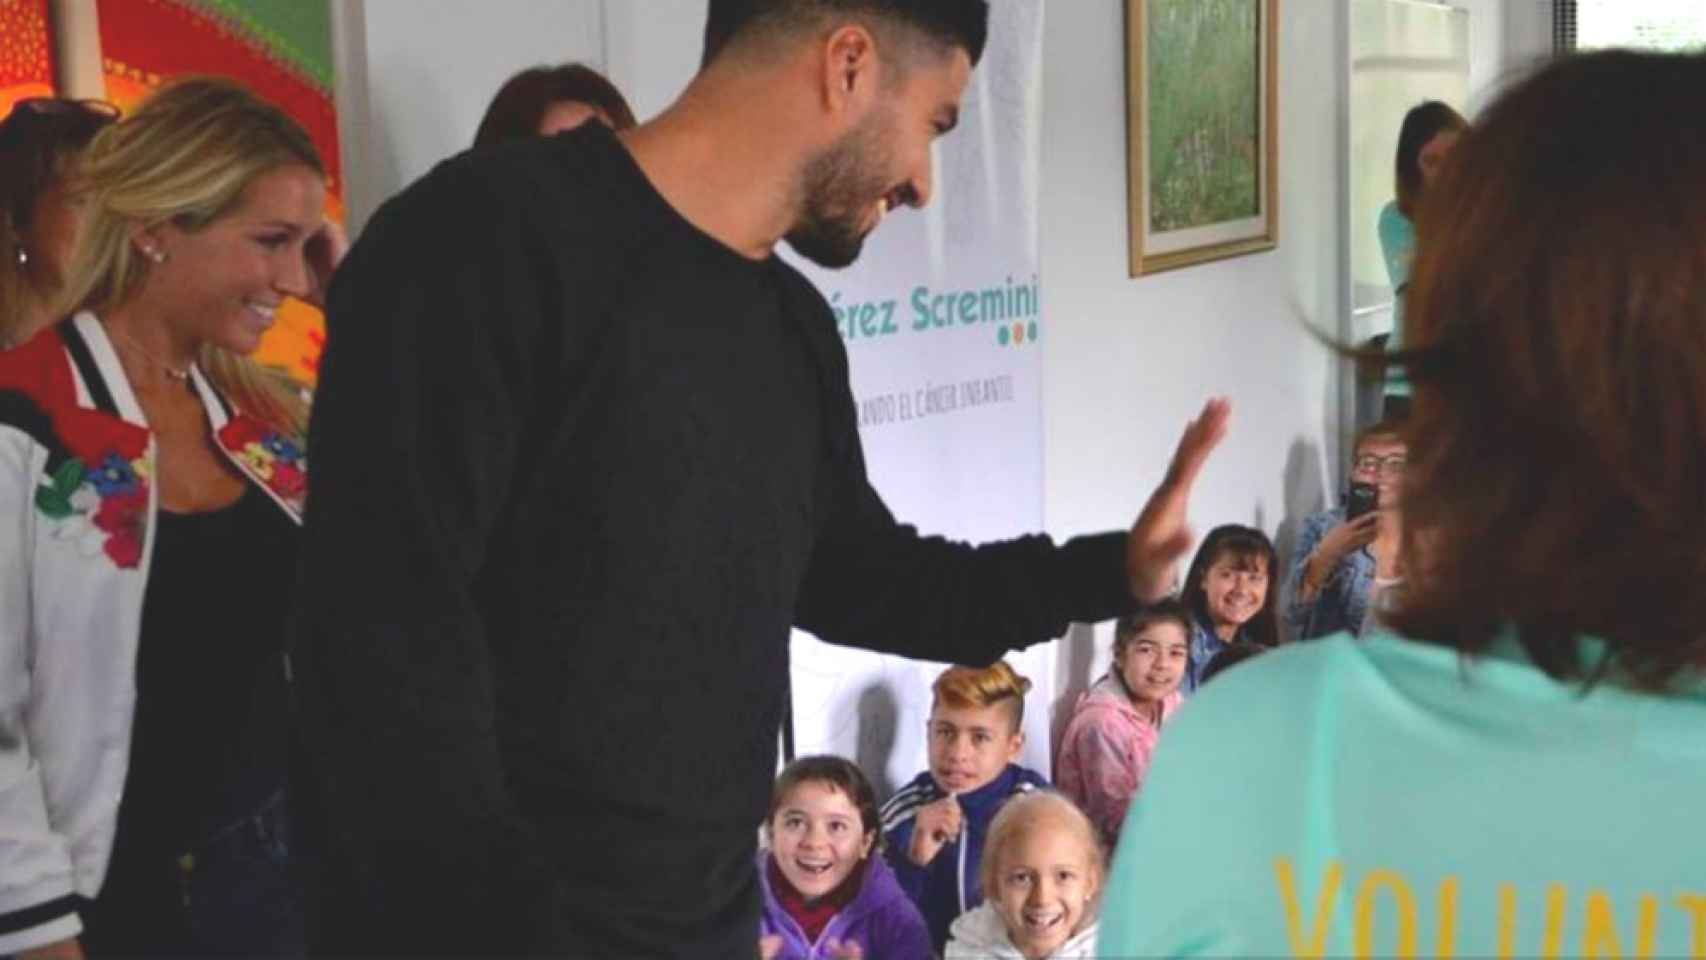 Luis Suárez en su visita a la Fundación Pérez Scremini / FUNDACIÓN P.SREMINI